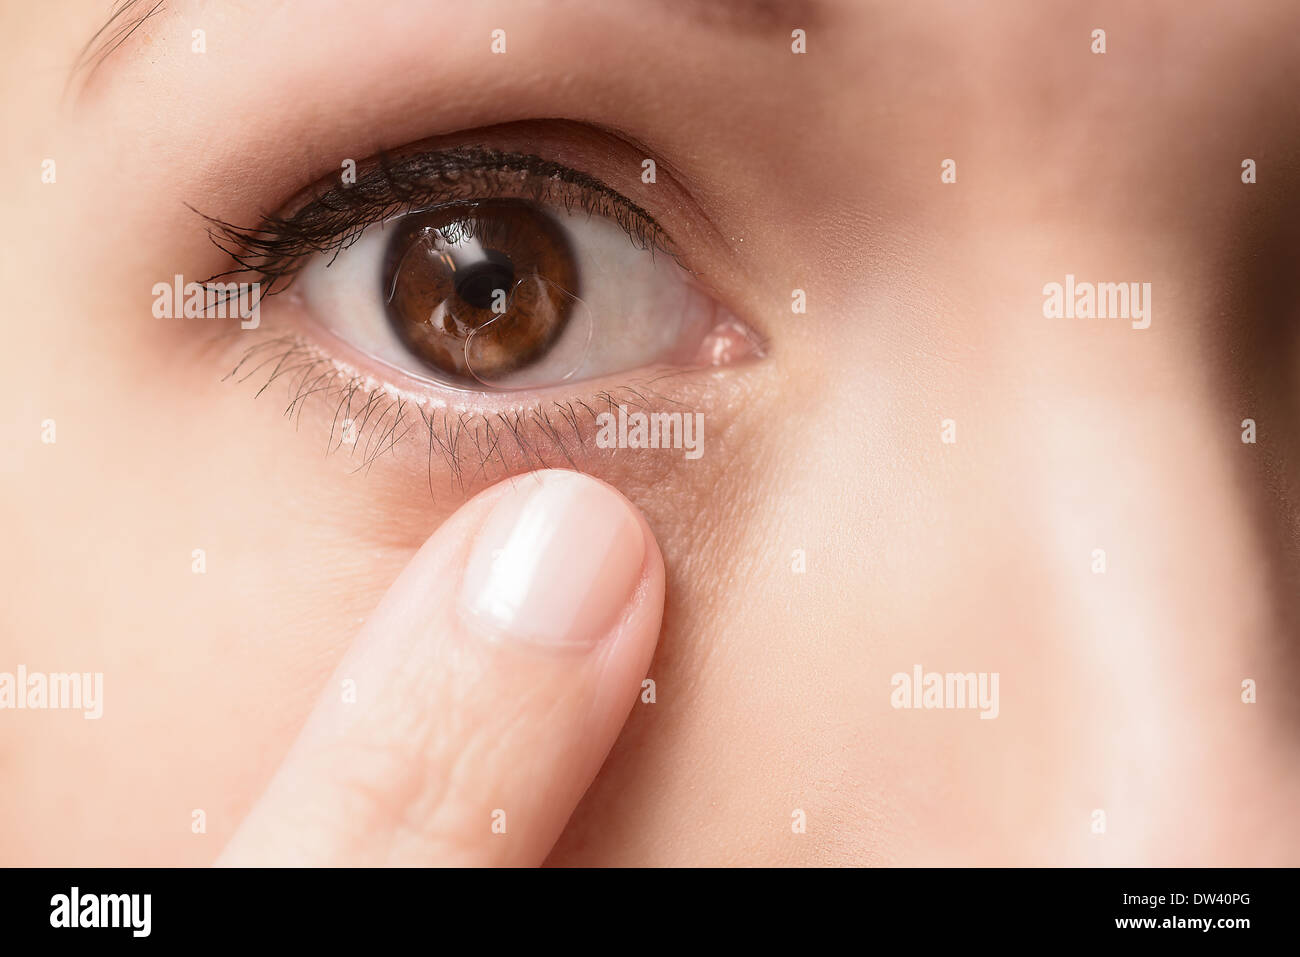 Lente de contacto en el ojo de una paciente femenina con las típicas burbujas de aire bajo la lente, extreme close up Foto de stock